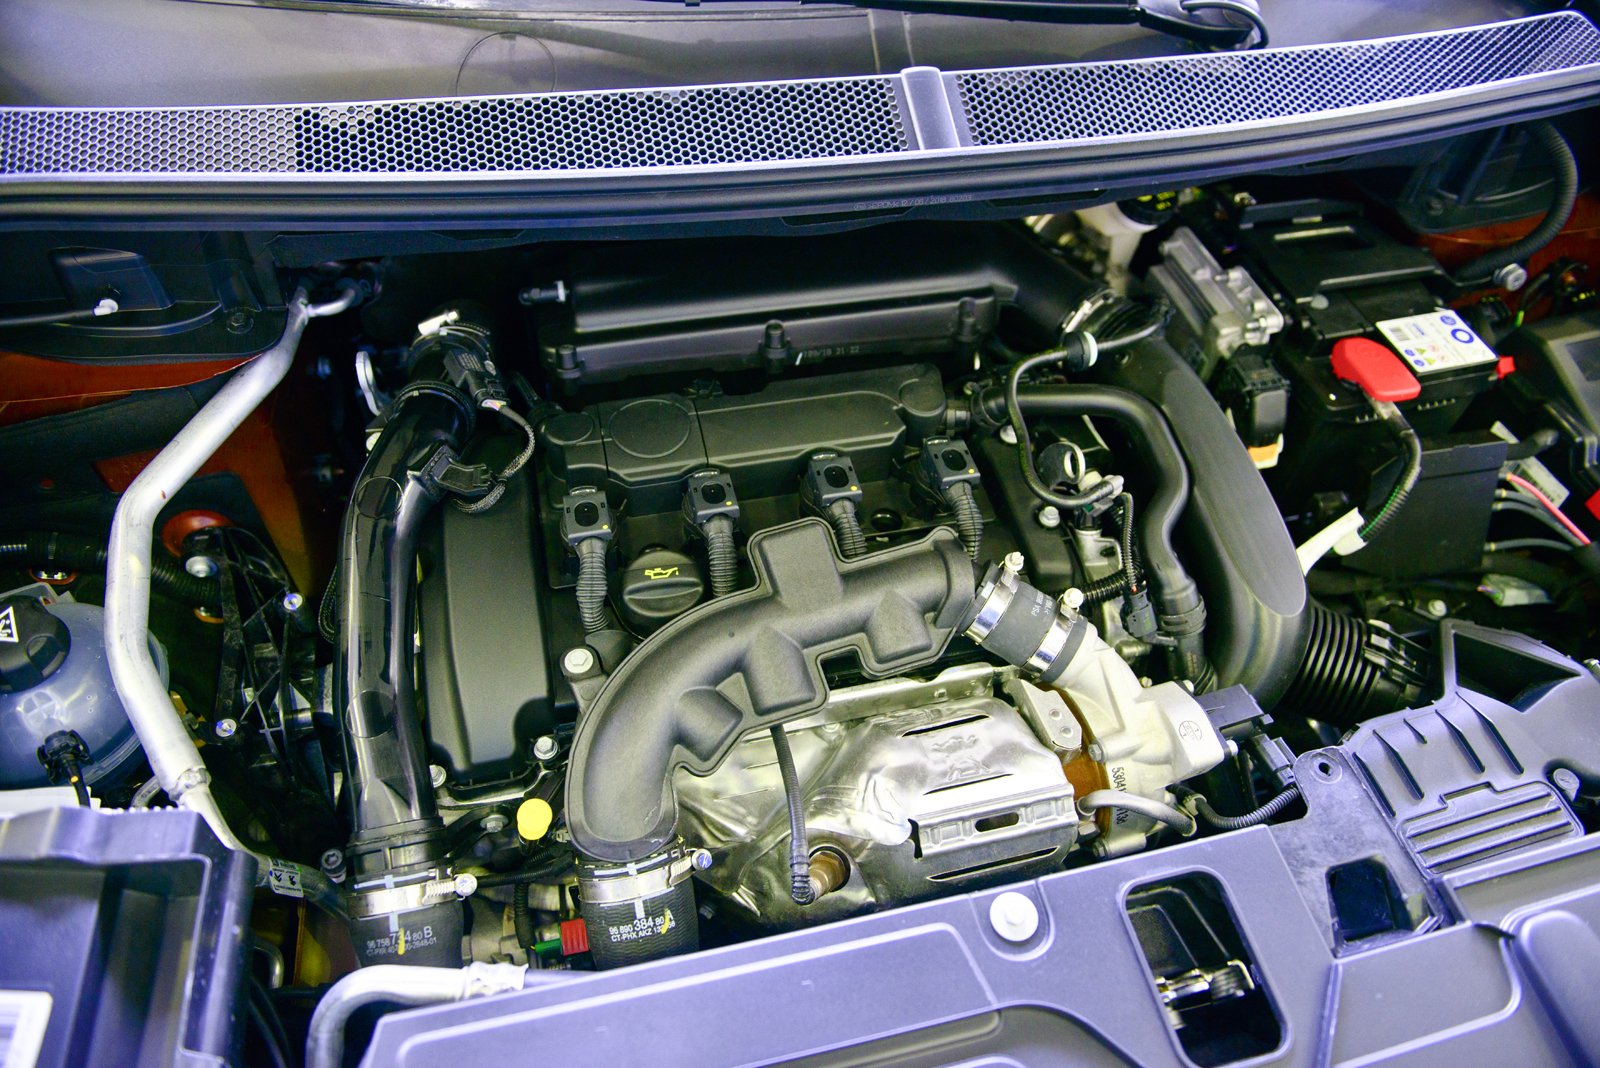 Peugeot 3008 двигатель. Двигатель Пежо 3008. Мотор Пежо 3008 турбо. Peugeot 3008 Turbo мотор. Вид двигателя Пежо 3008 турбо.